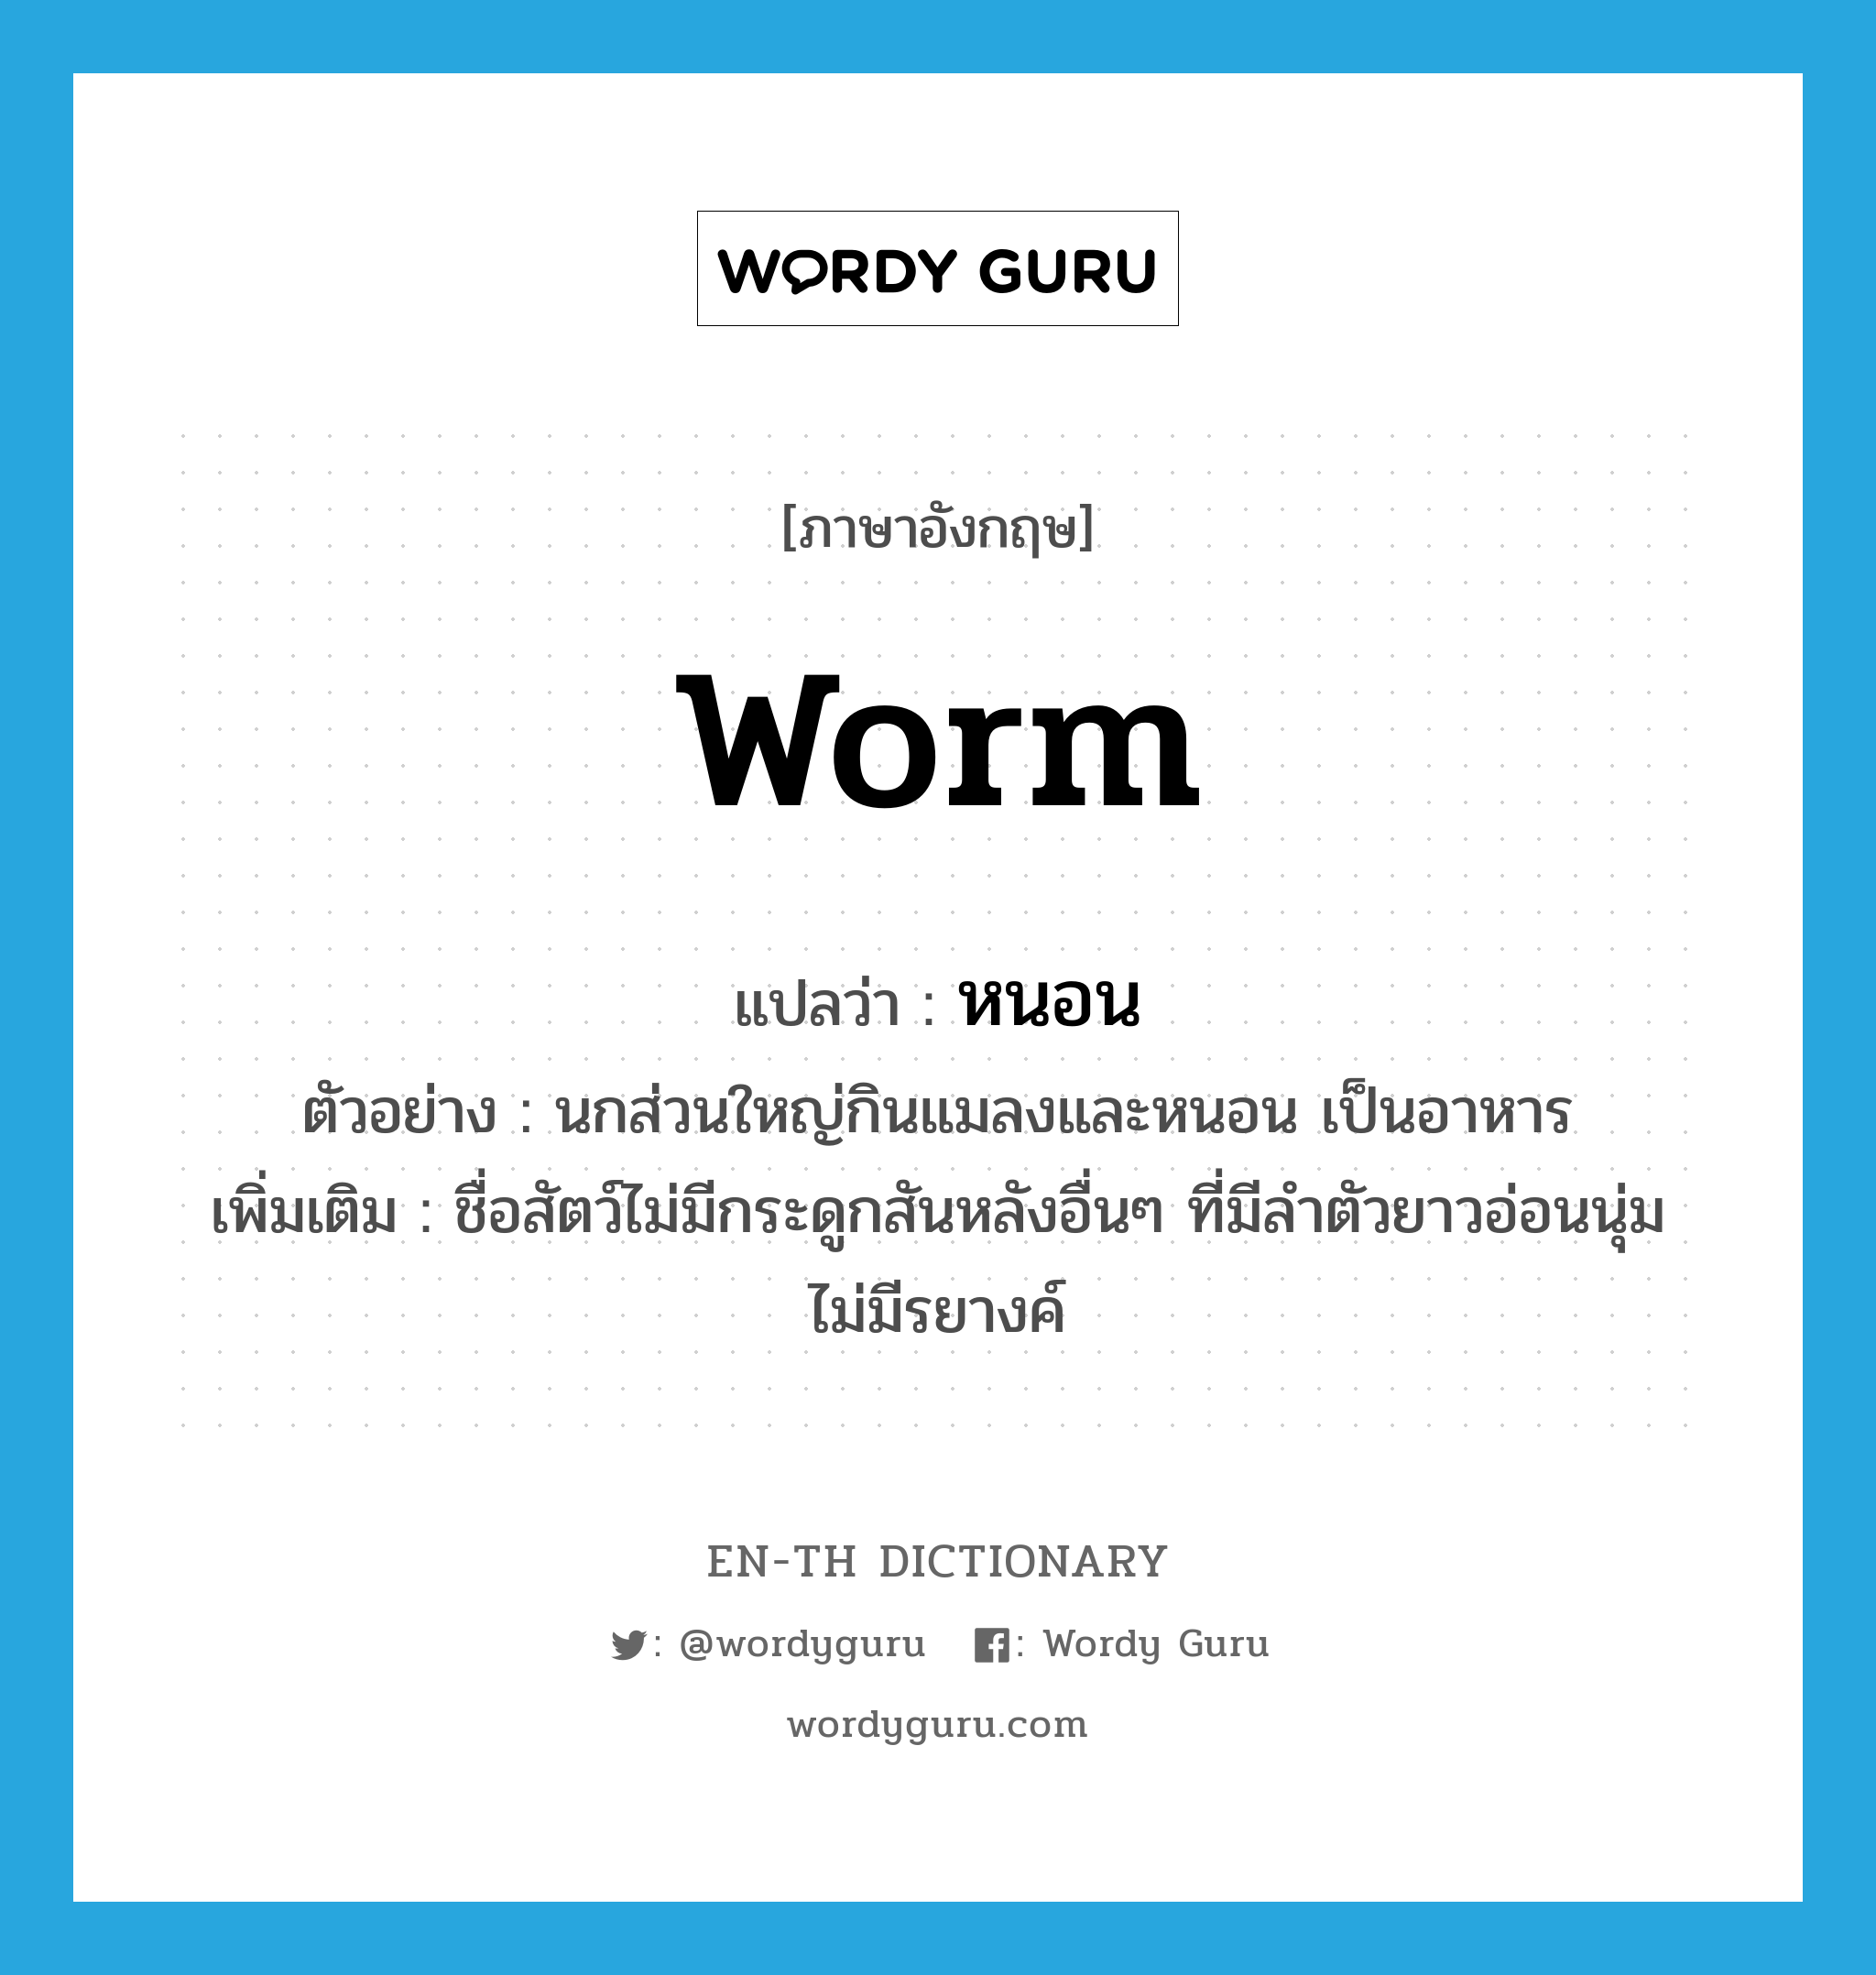 worm แปลว่า?, คำศัพท์ภาษาอังกฤษ worm แปลว่า หนอน ประเภท N ตัวอย่าง นกส่วนใหญ่กินแมลงและหนอน เป็นอาหาร เพิ่มเติม ชื่อสัตว์ไม่มีกระดูกสันหลังอื่นๆ ที่มีลำตัวยาวอ่อนนุ่ม ไม่มีรยางค์ หมวด N